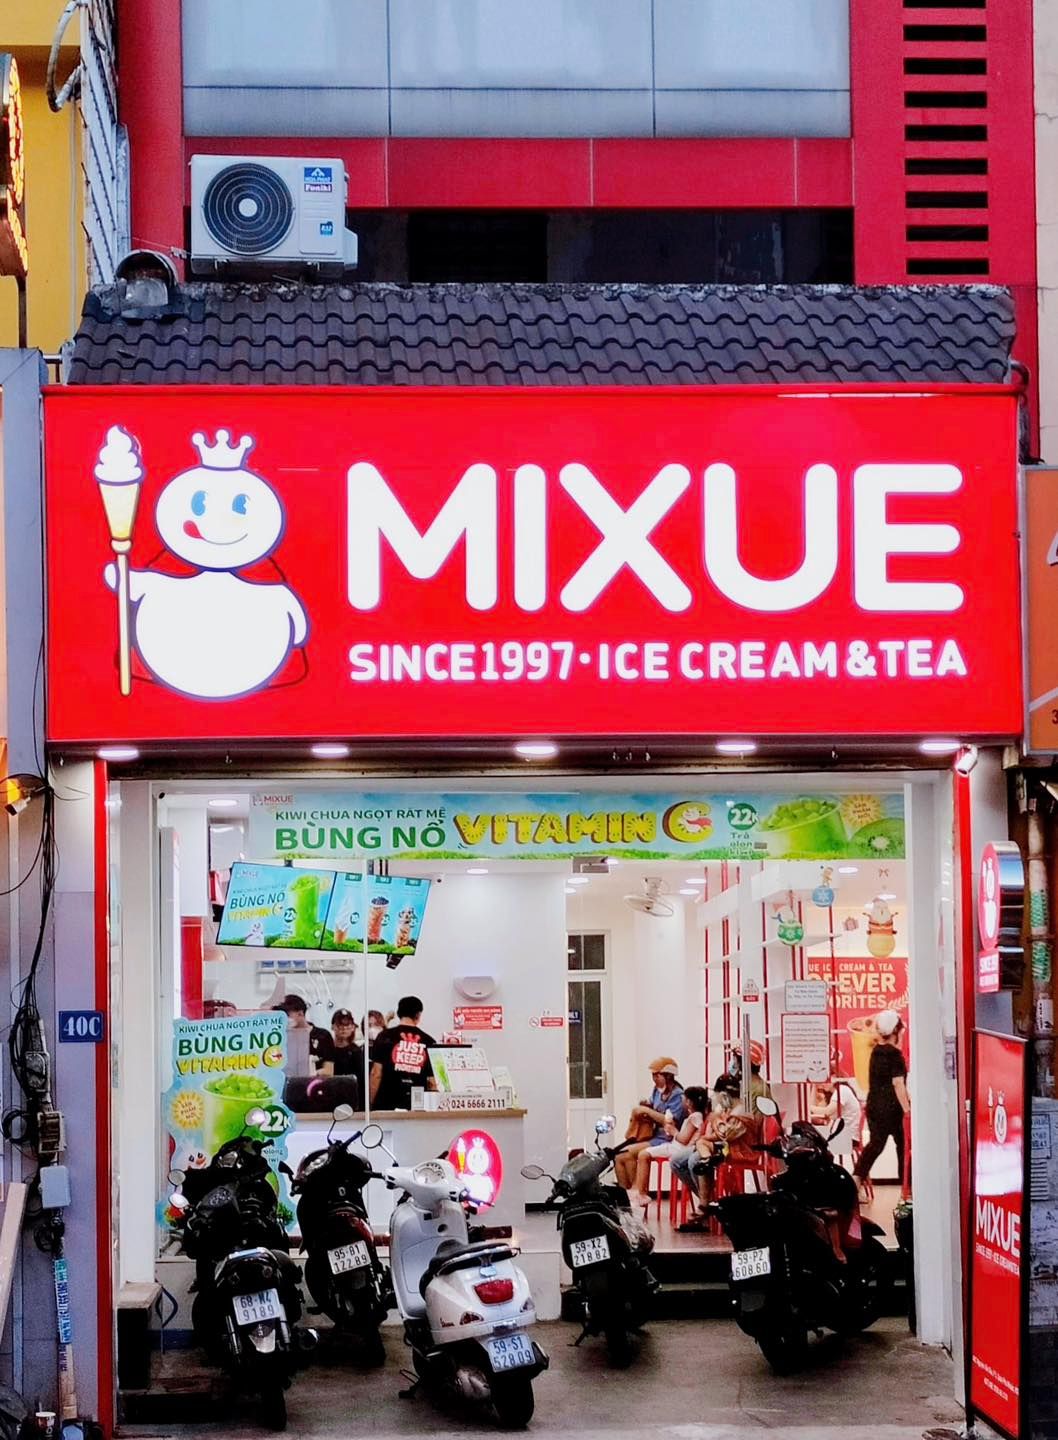 Chuỗi kem và trà sữa giá rẻ Mixue chạm mốc 1.000 cửa hàng tại Việt Nam: Bằng tổng Highland Coffee, Phúc Long, The Coffee House, Trung Nguyên Legend cộng lại - Ảnh 2.